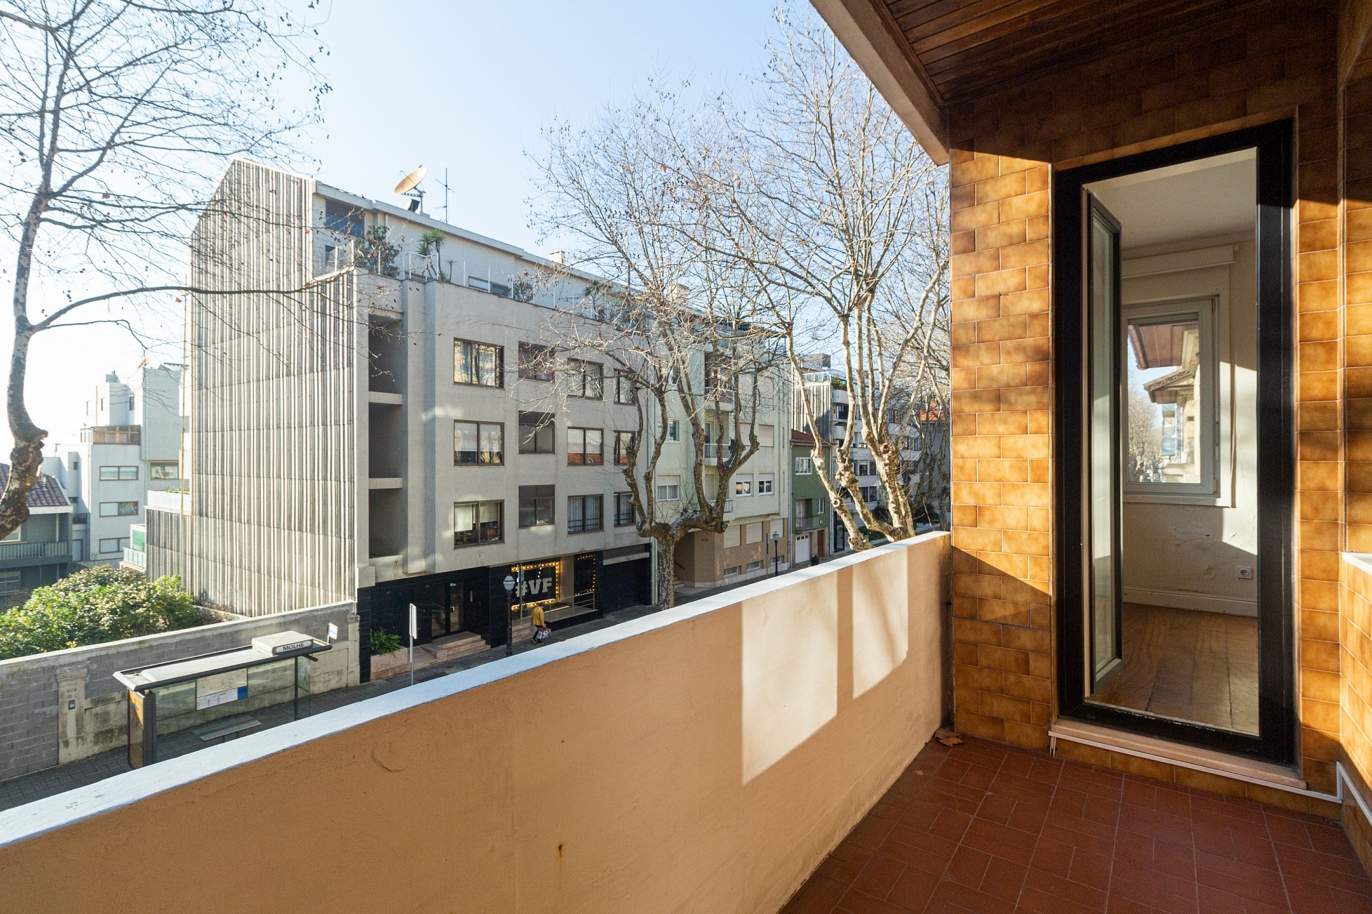 Venda: Apartamento com varanda, para renovar, em 2.ª linha de mar, Foz do Douro_190357